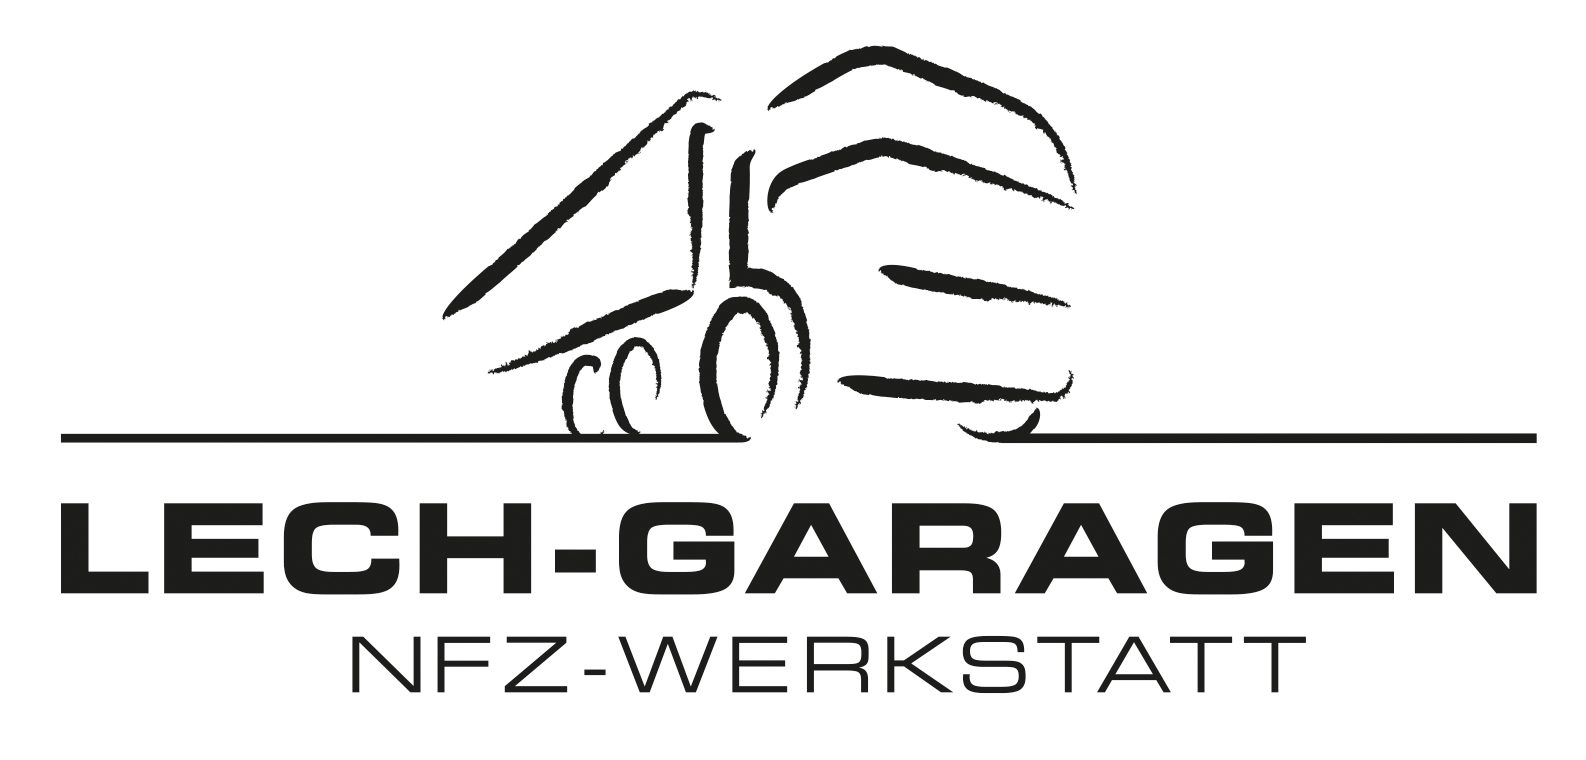 Lech-Garagen Logo2